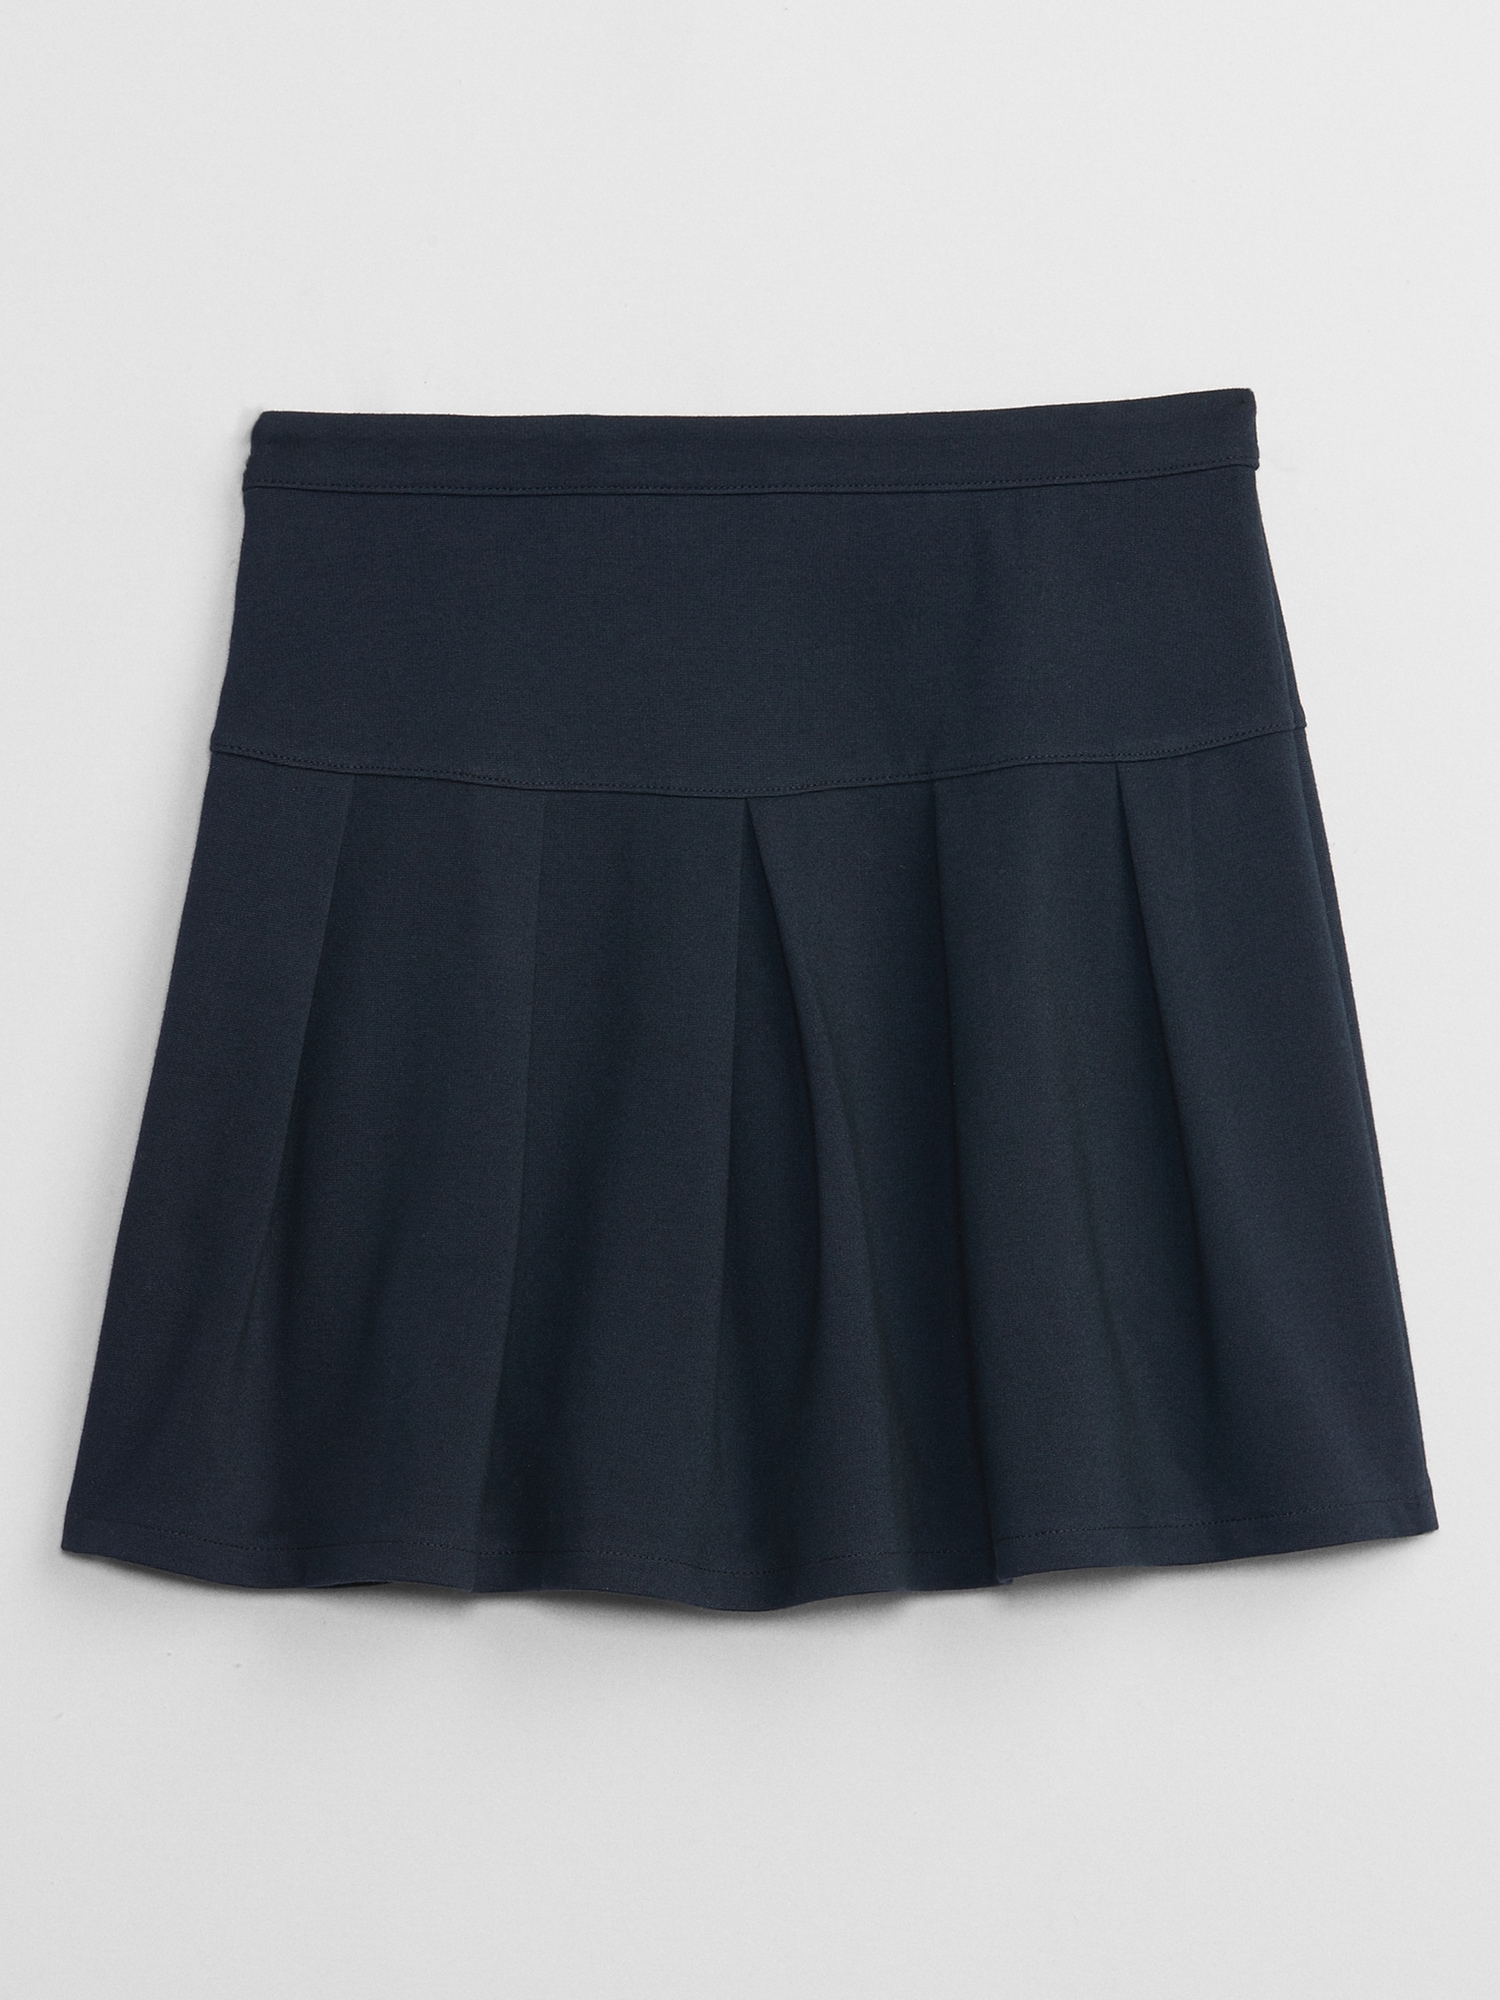 Kids Uniform Skirt | Gap Factory